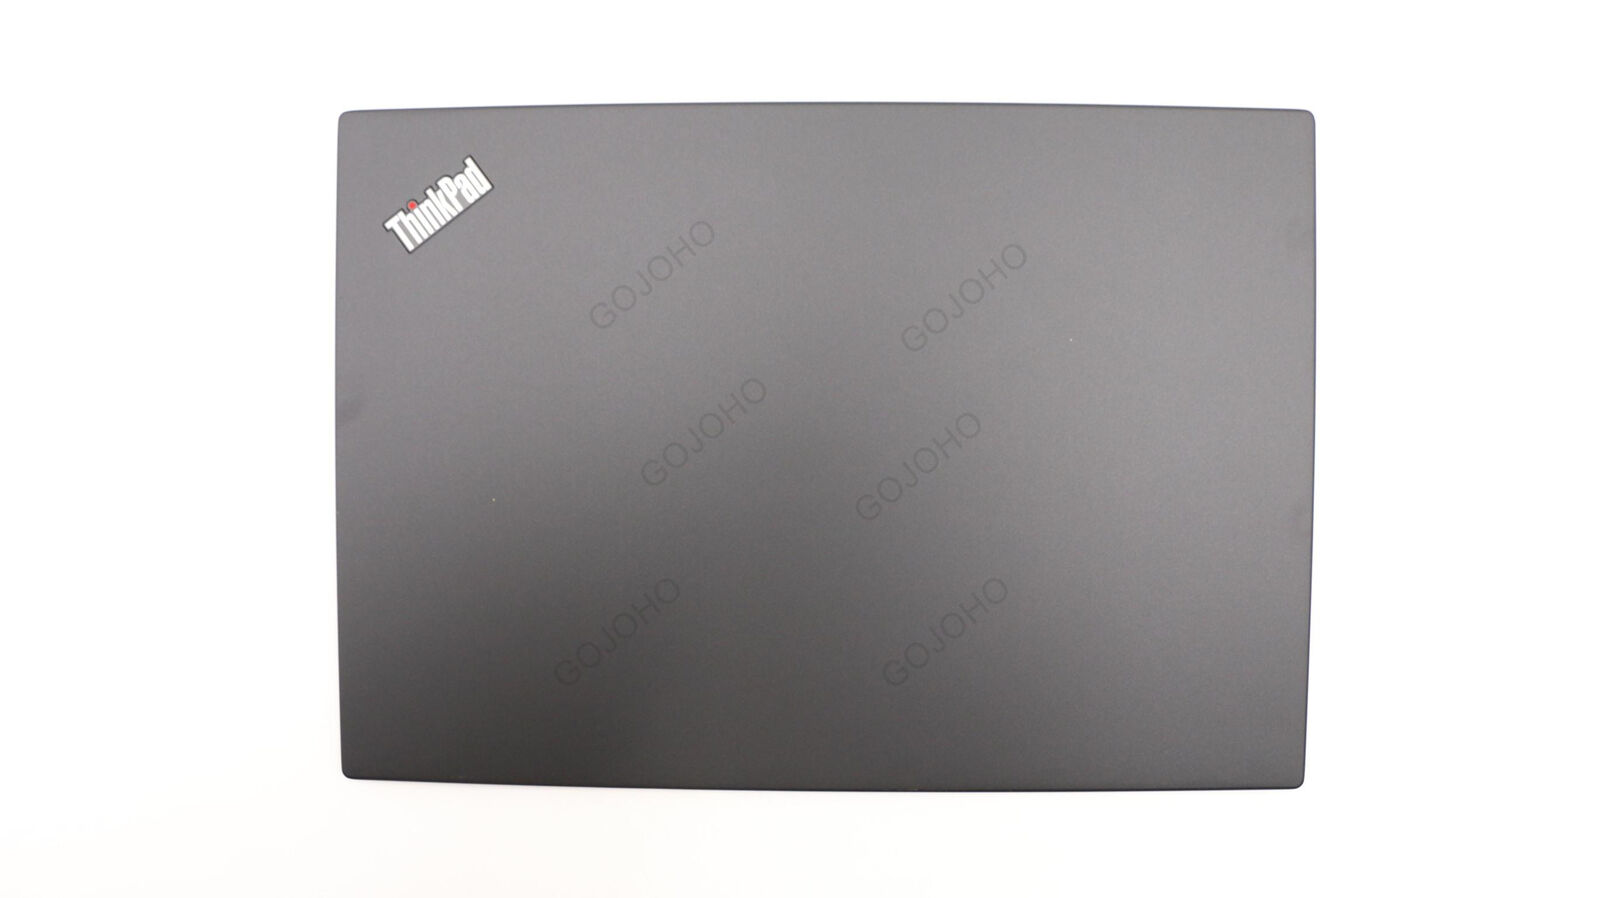 02HL007 02HL006 New/Orig For Lenovo ThinkPad X13 Gen 1 20T2 20T3 Lcd back cover